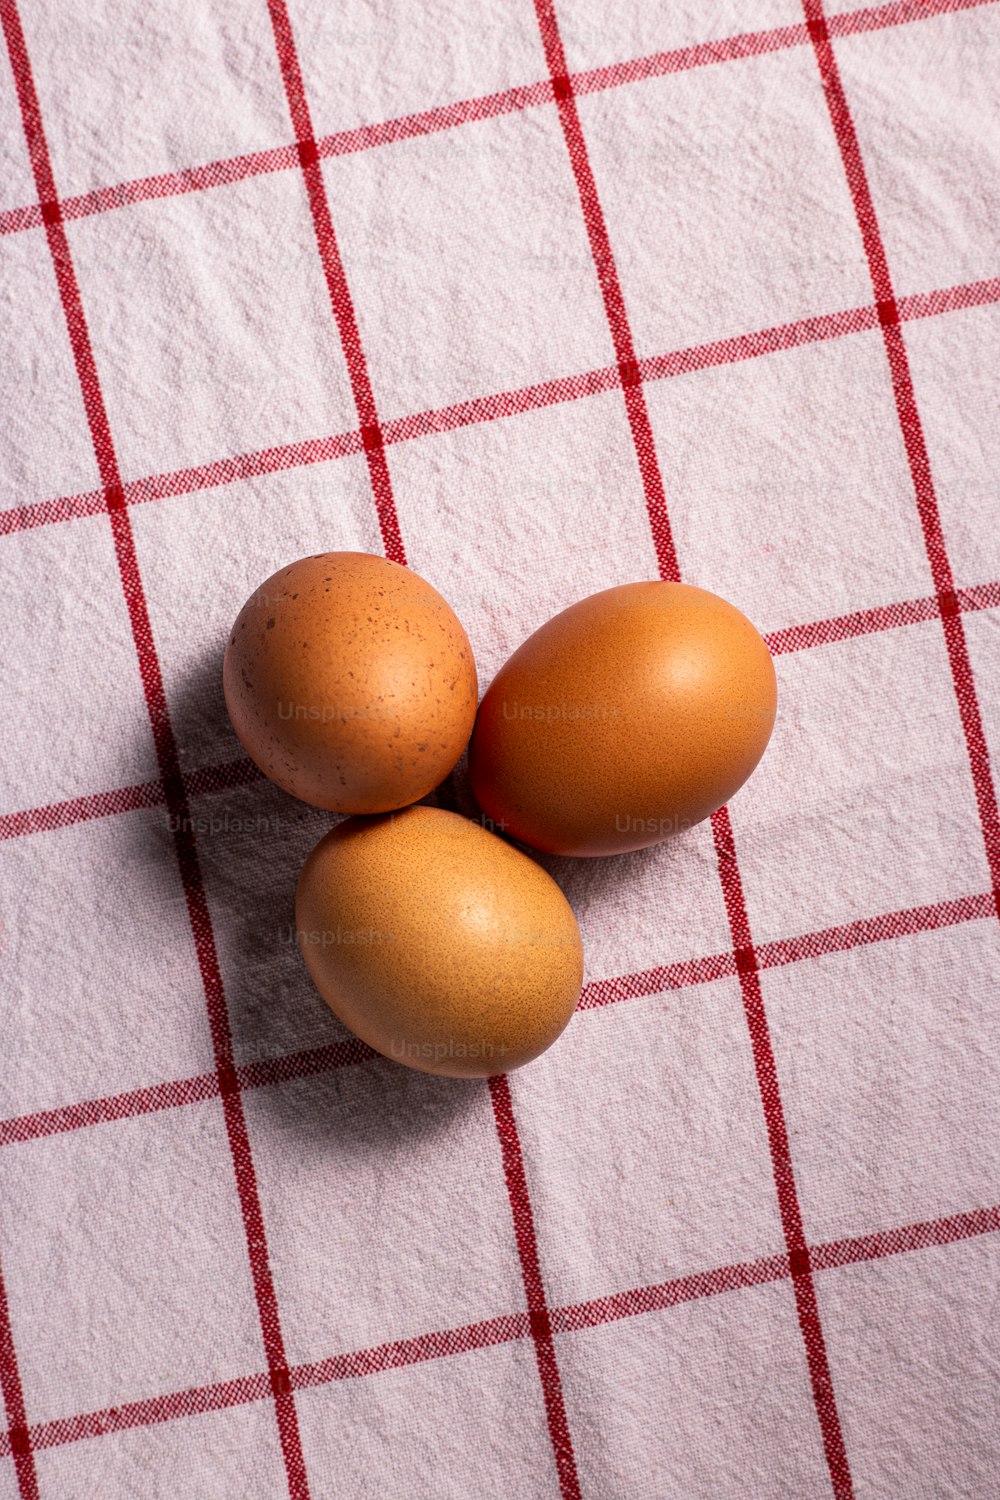 drei braune Eier auf einer rot-weiß karierten Tischdecke